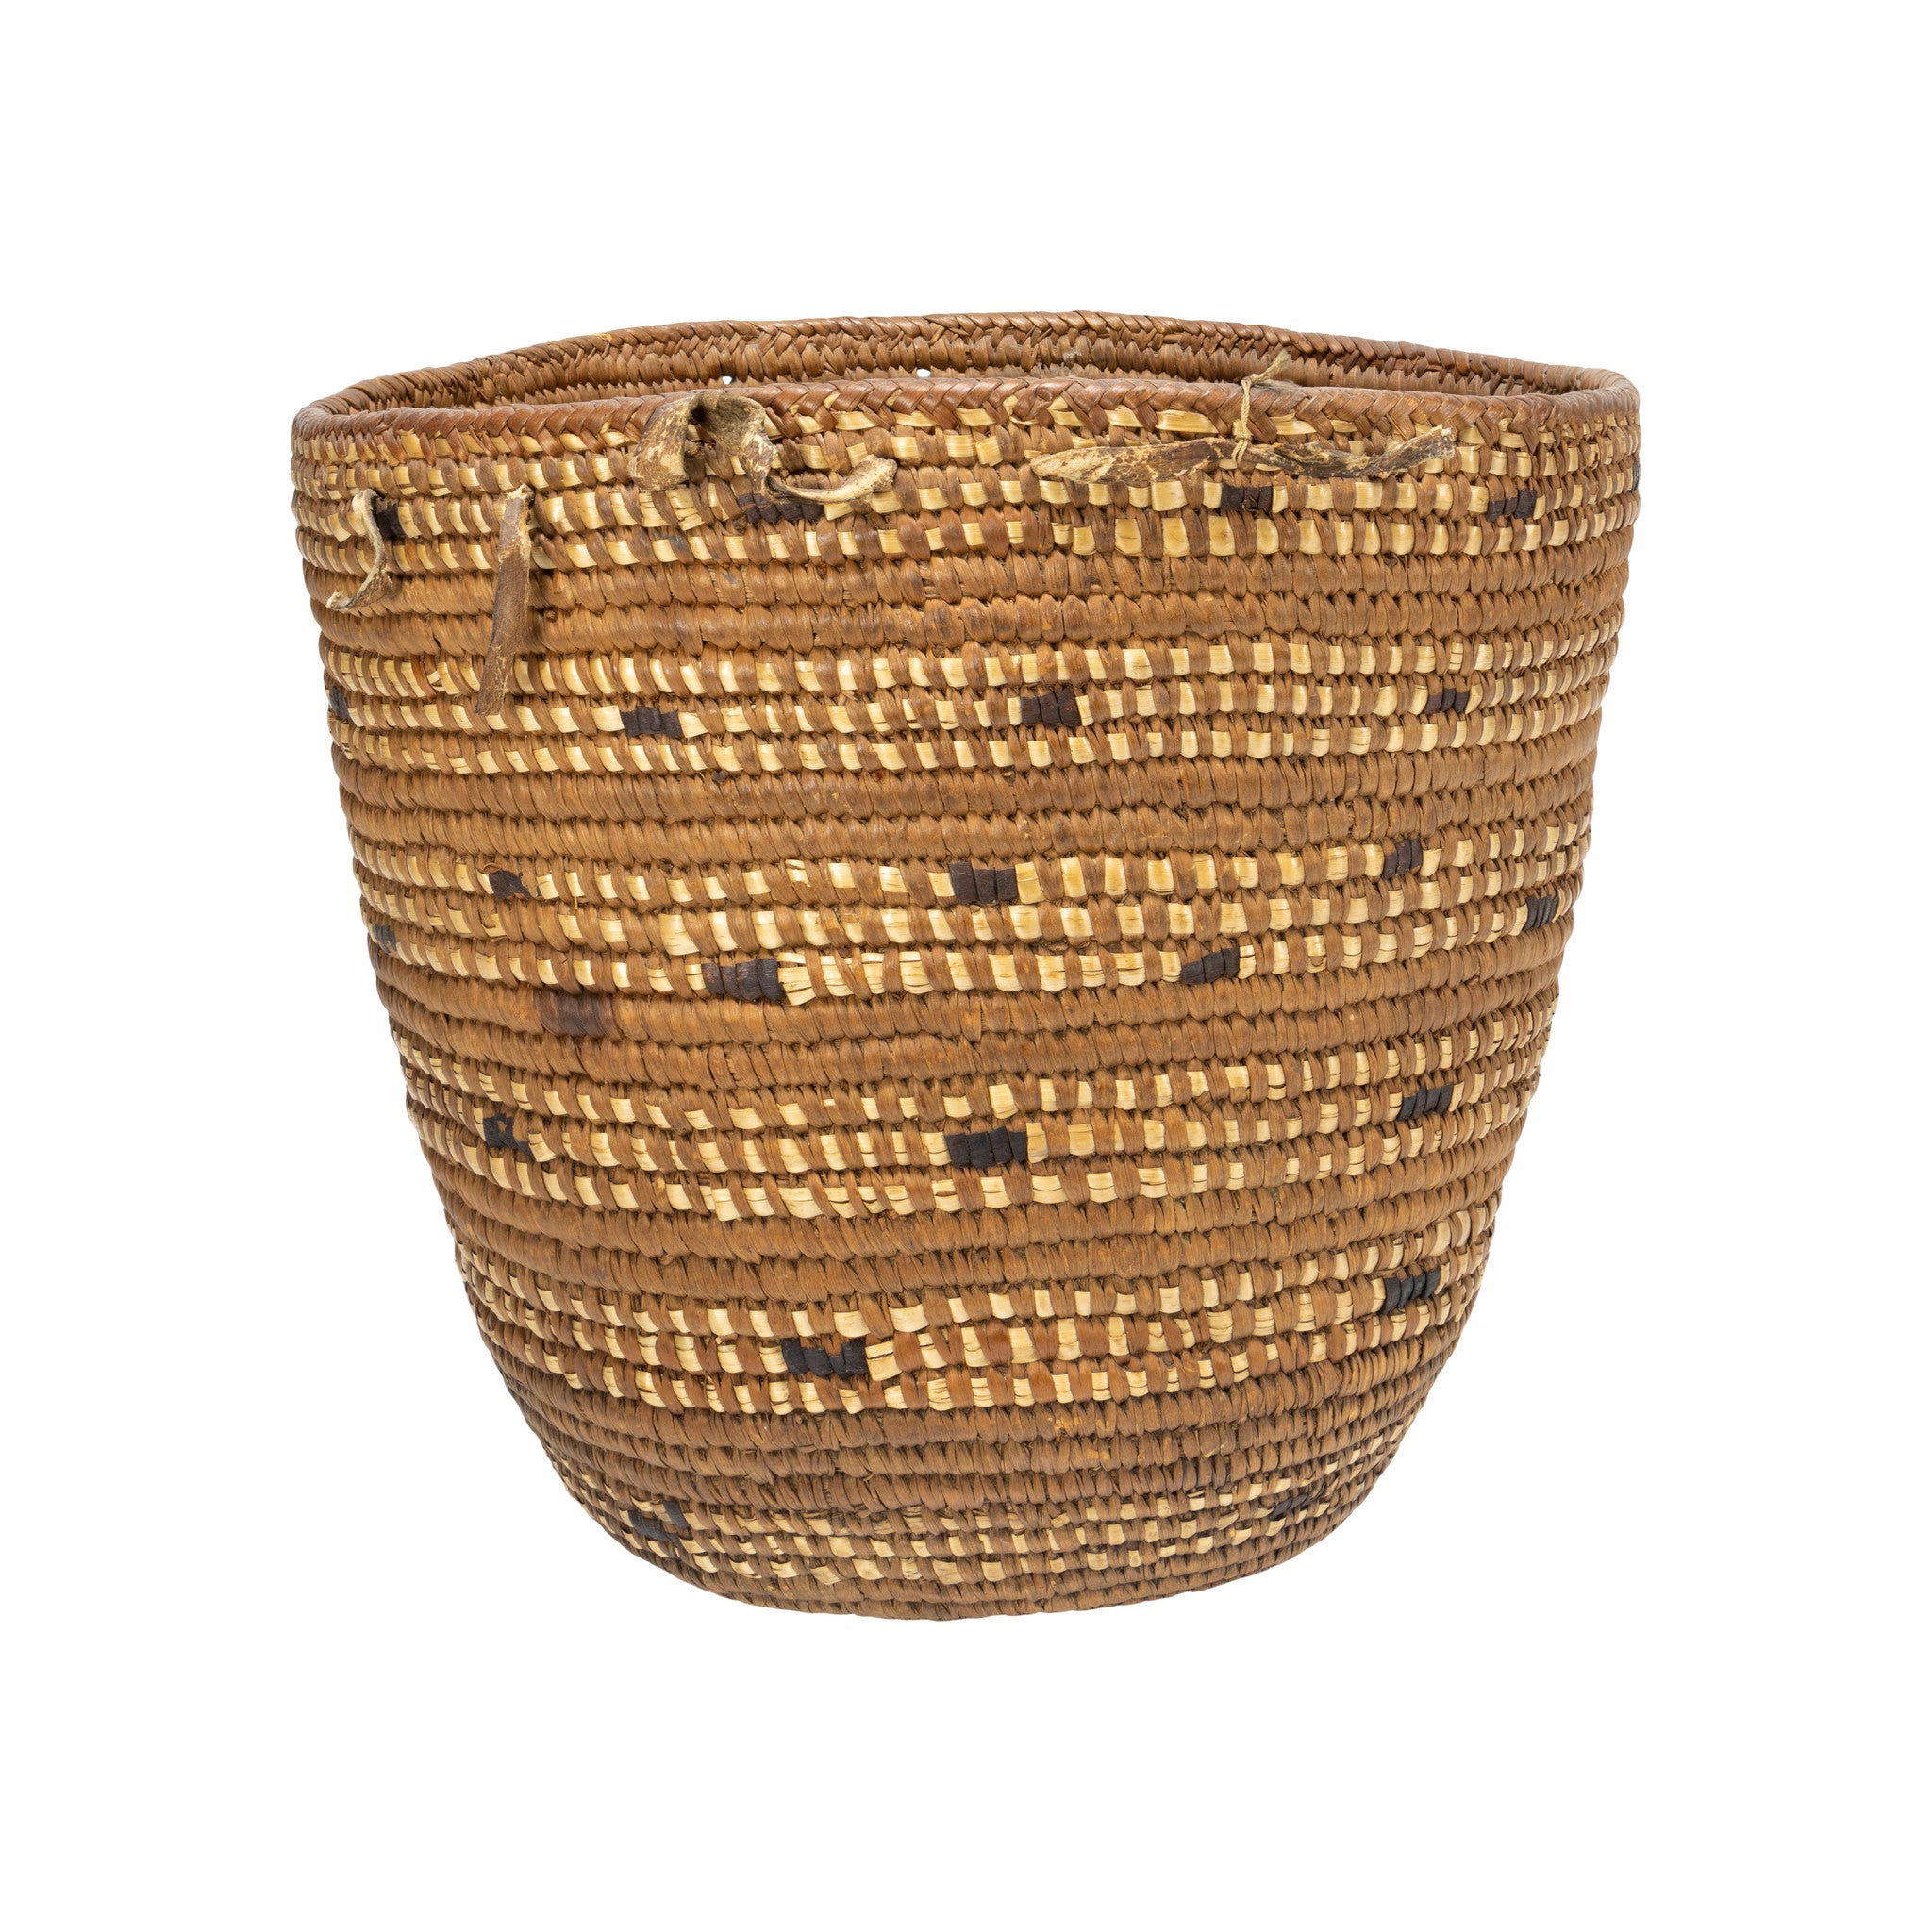 Cowlitz Basket